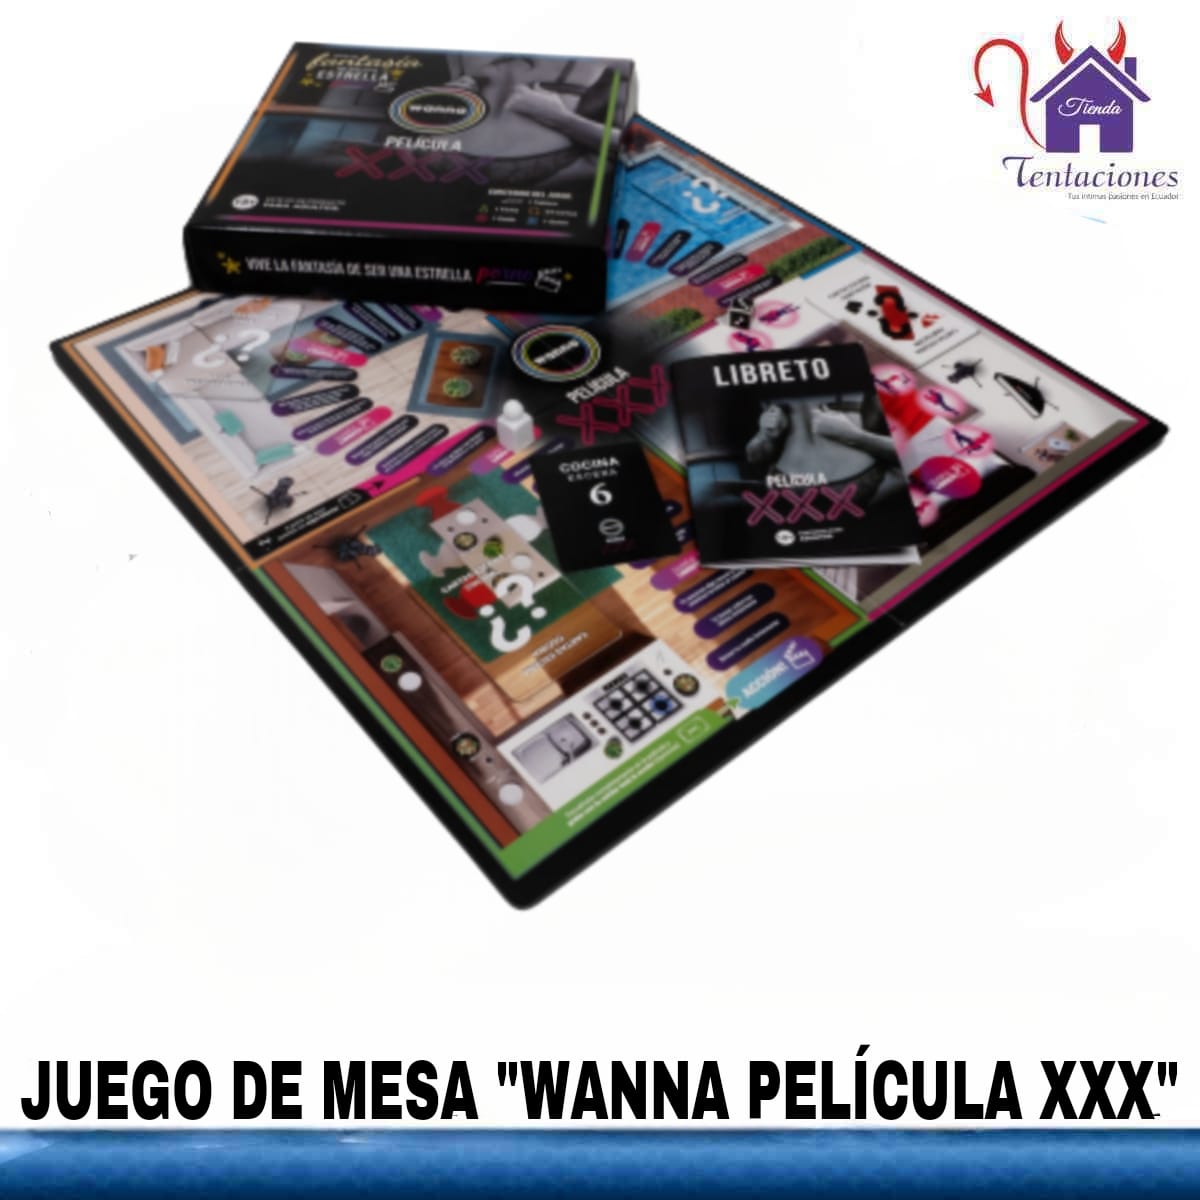 Juego de mesa Wanna Pelicula XXX-Tienda Tentaciones-Sex Shop Ecuador